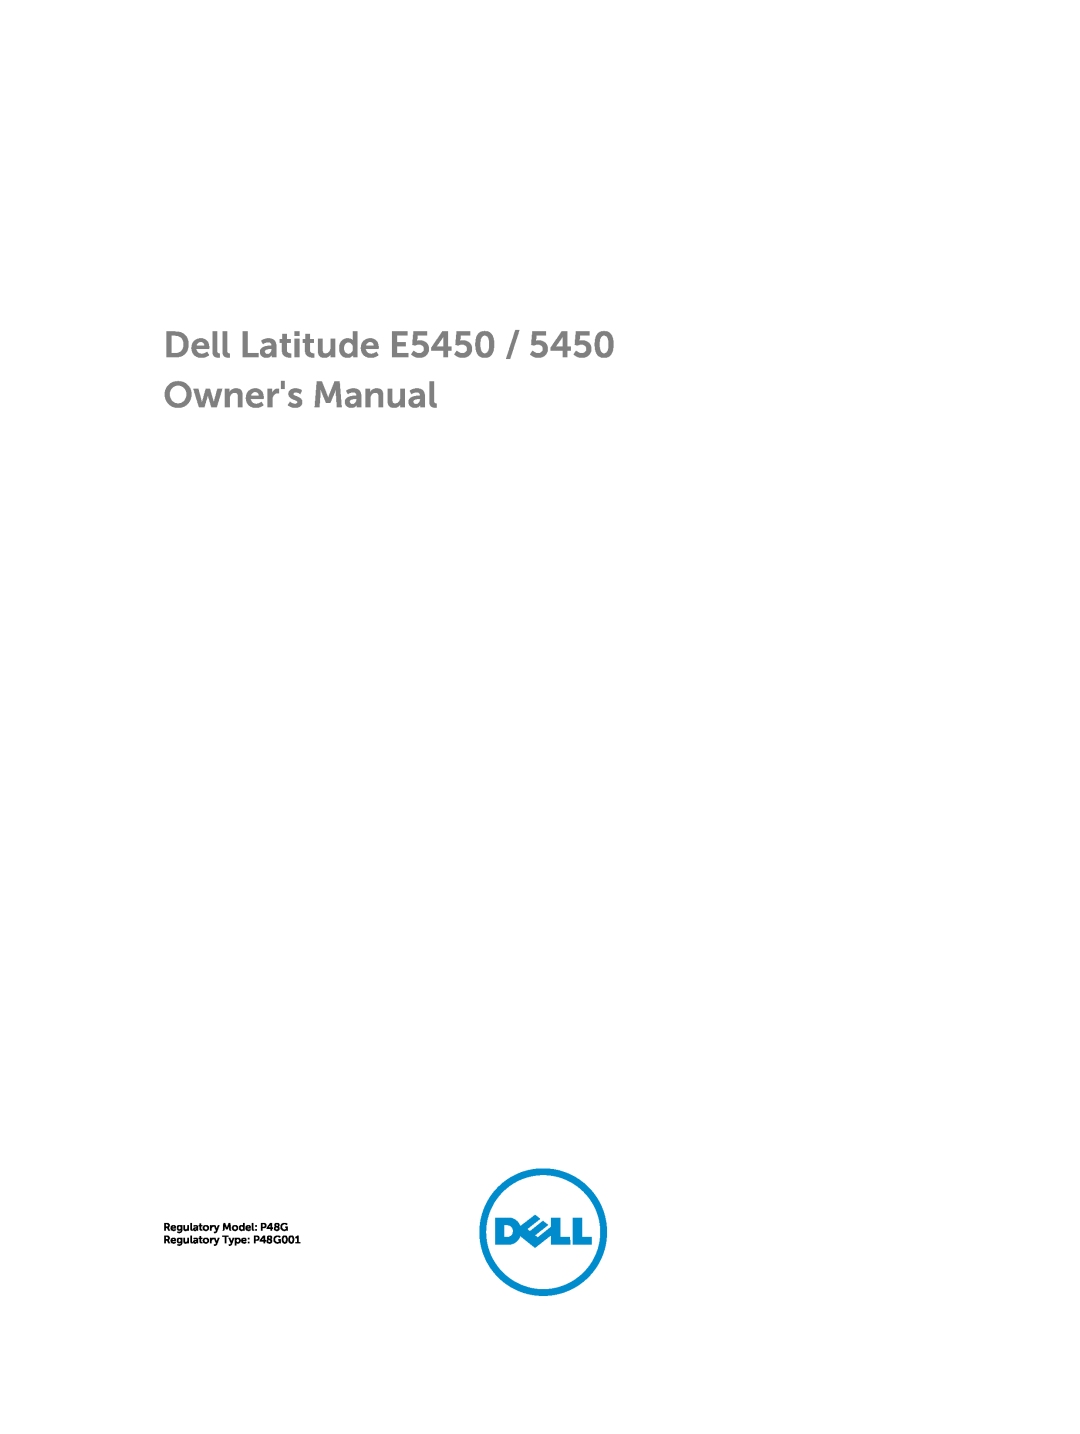 Dell E5450 owner manual Regulatory Model P48G Regulatory Type P48G001 